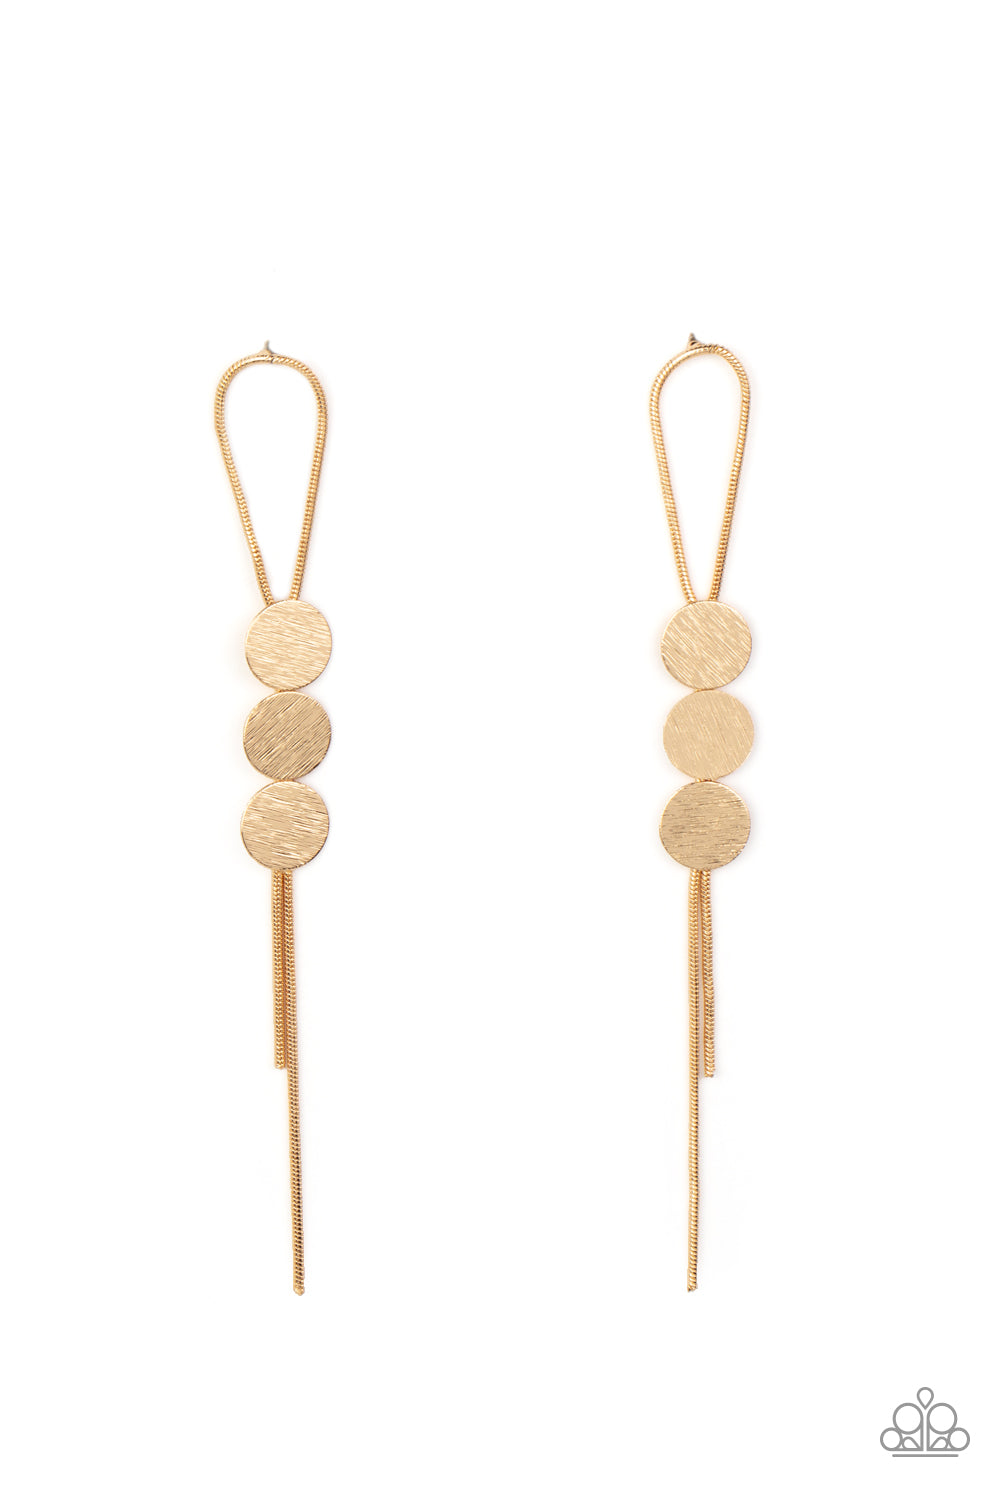 Bolo Beam - Gold earrings